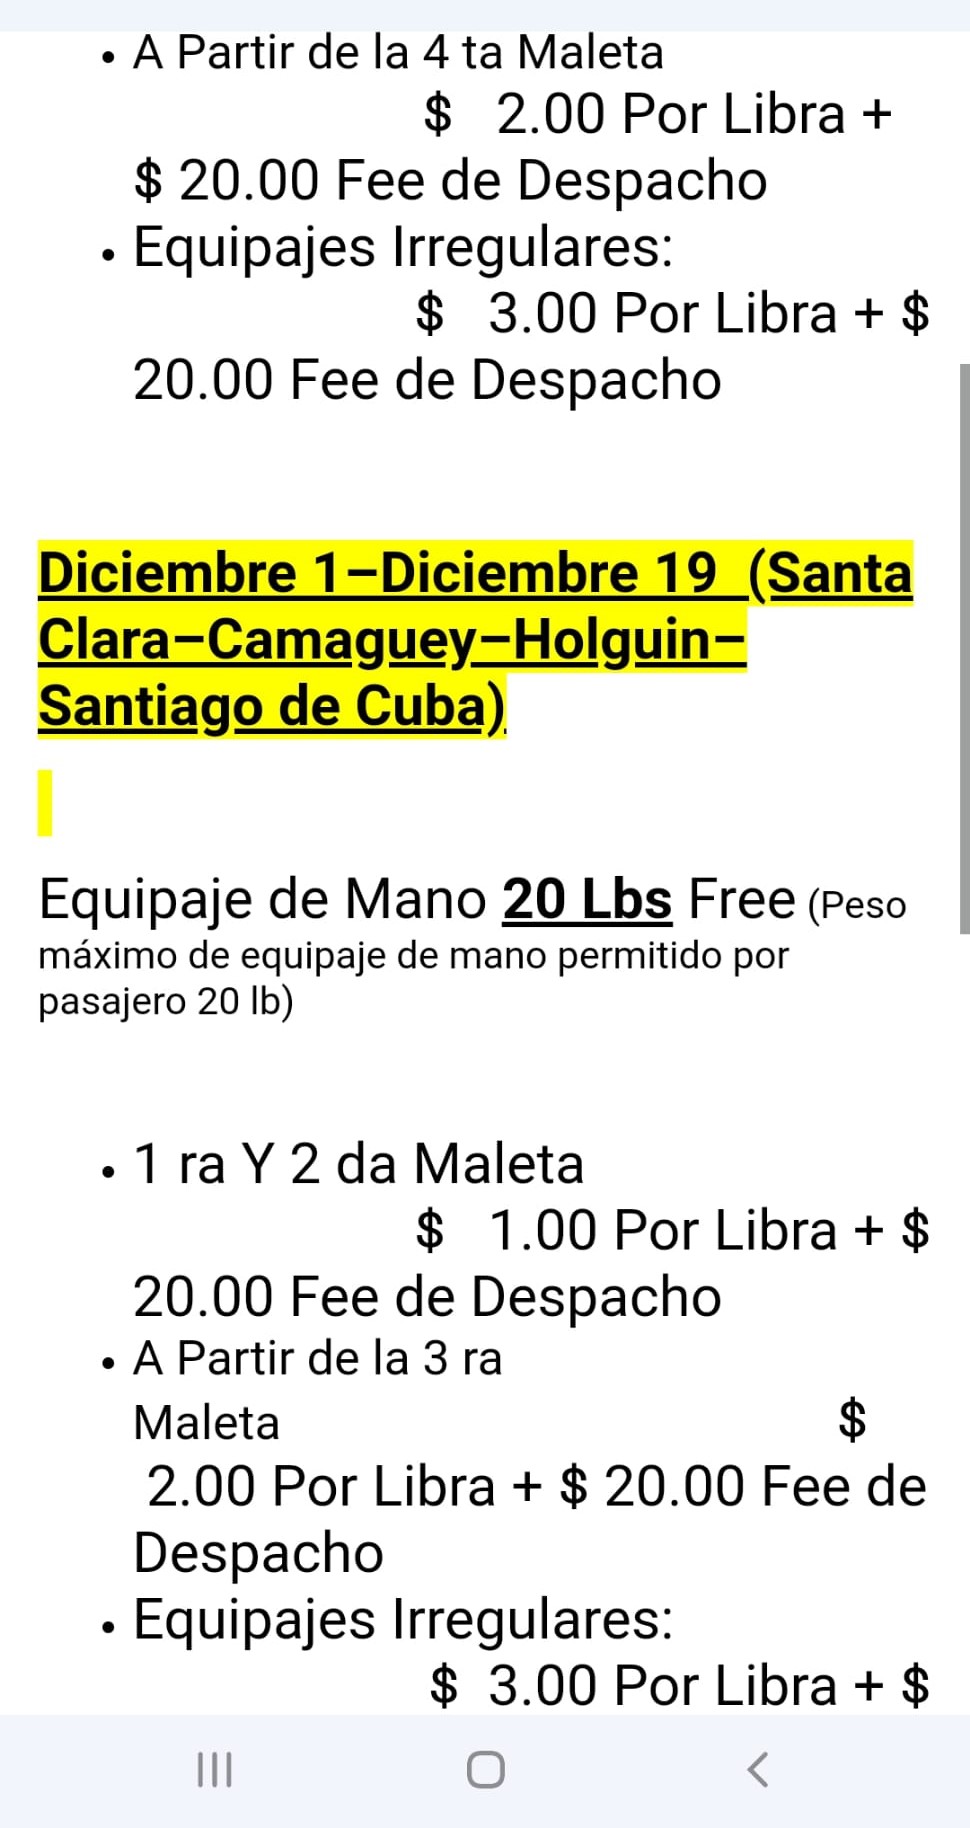 https://www.periodicocubano.com/wp-content/uploads/2022/11/Estas-son-las-ofertas-de-equipajes-en-vuelos-charters-desde-EEUU-a-Cuba-en-fin-de-ano-2.jpeg